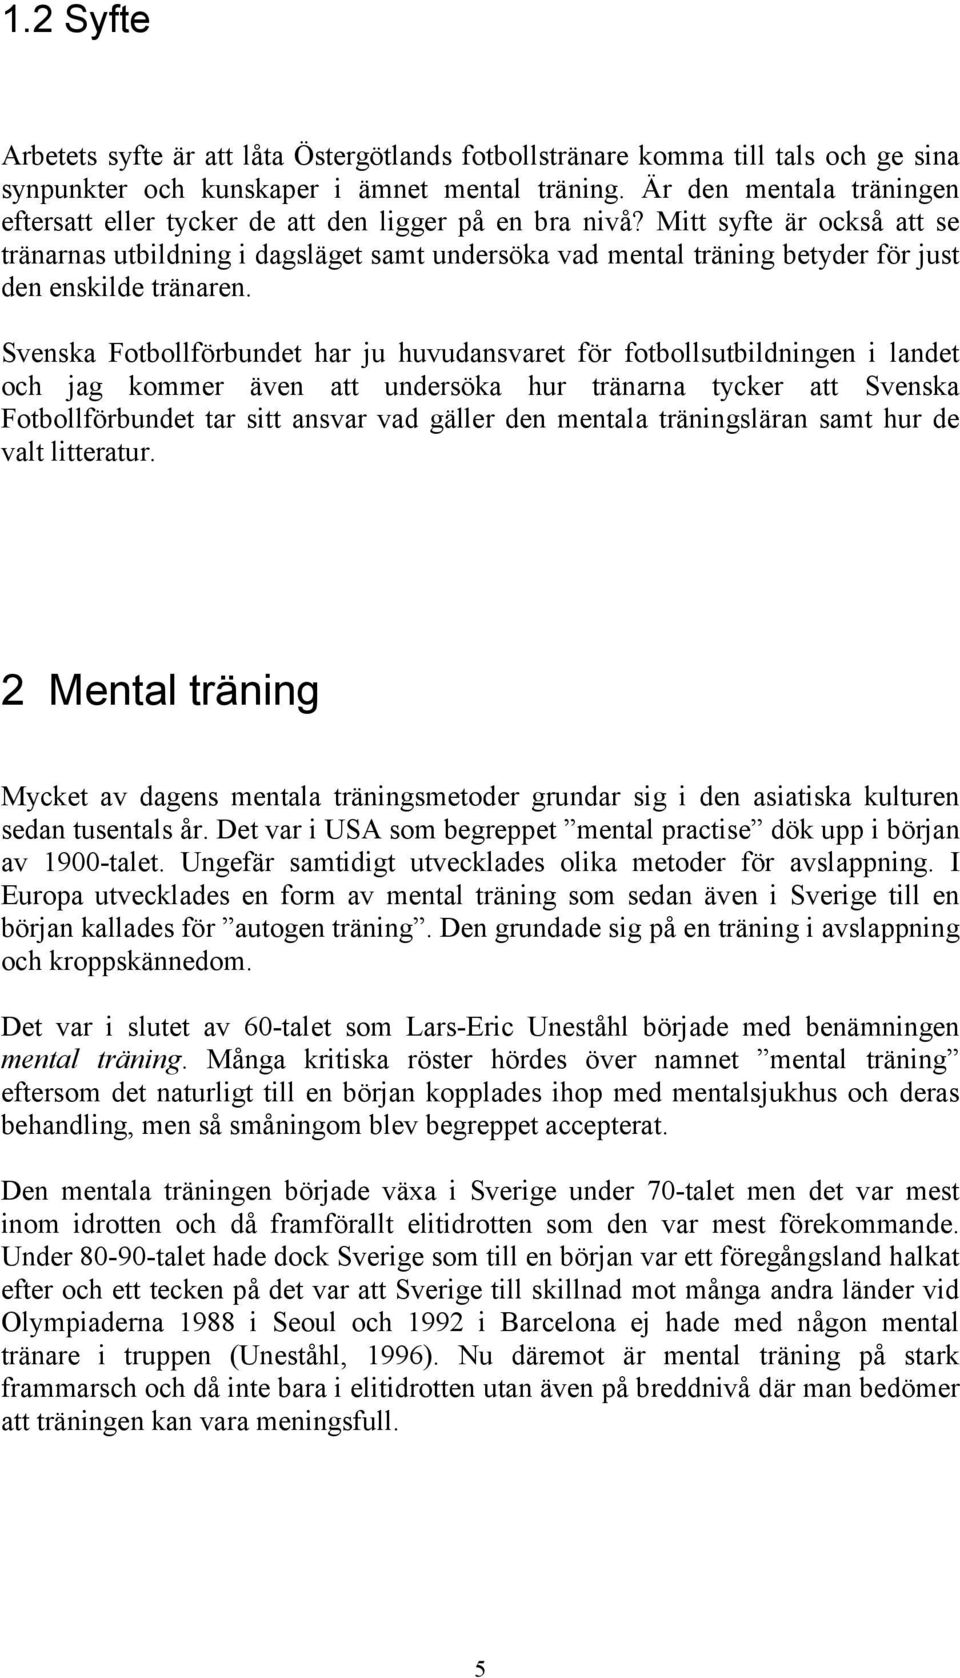 Mitt syfte är också att se tränarnas utbildning i dagsläget samt undersöka vad mental träning betyder för just den enskilde tränaren.